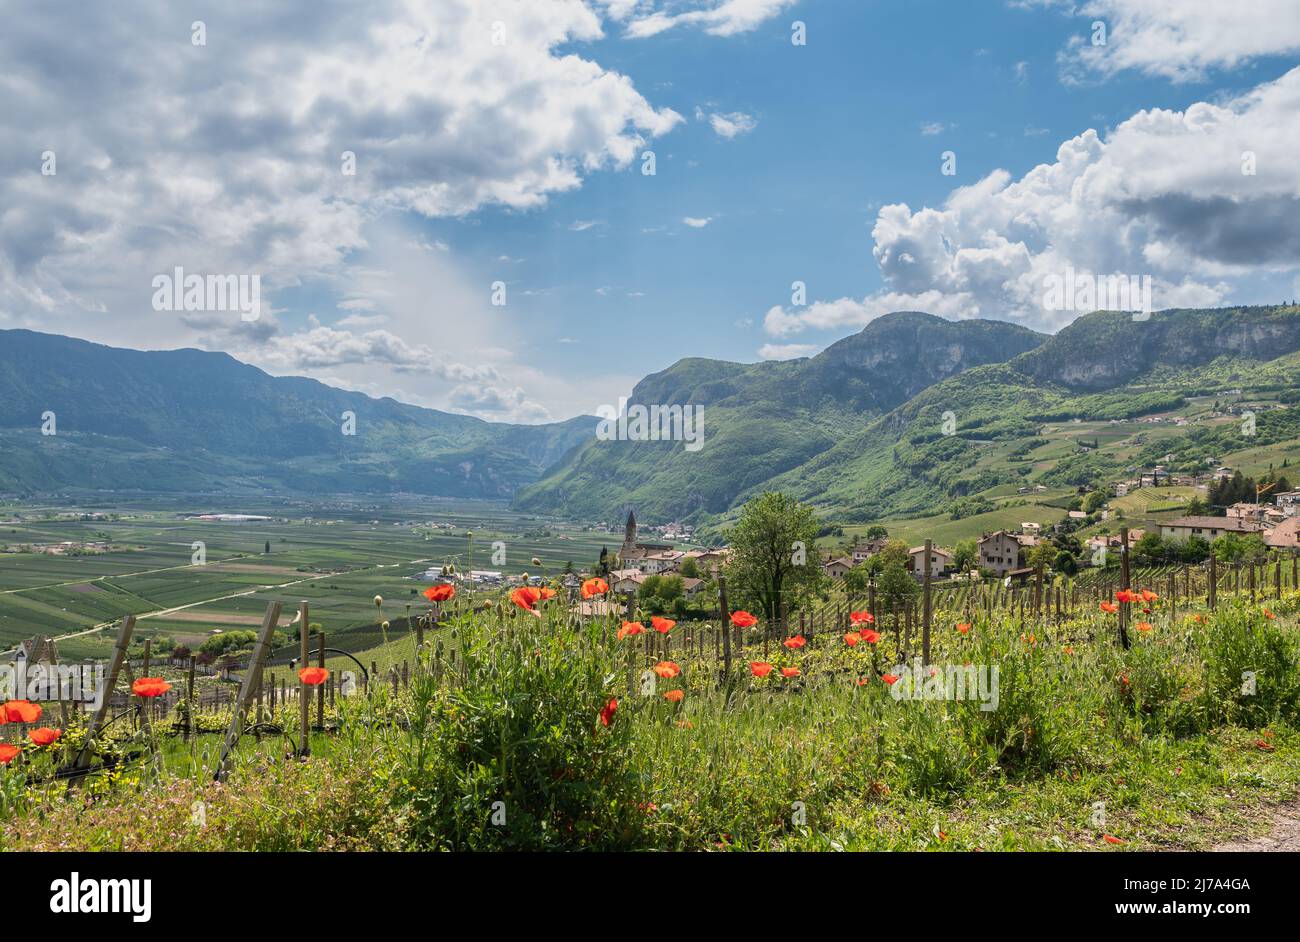 Paesaggio di Cortaccia (Kurtatsch) in Alto Adige, Italia settentrionale: L'idilliaco villaggio del vino si trova su un altopiano soleggiato a 333 m s.l.m. Foto Stock